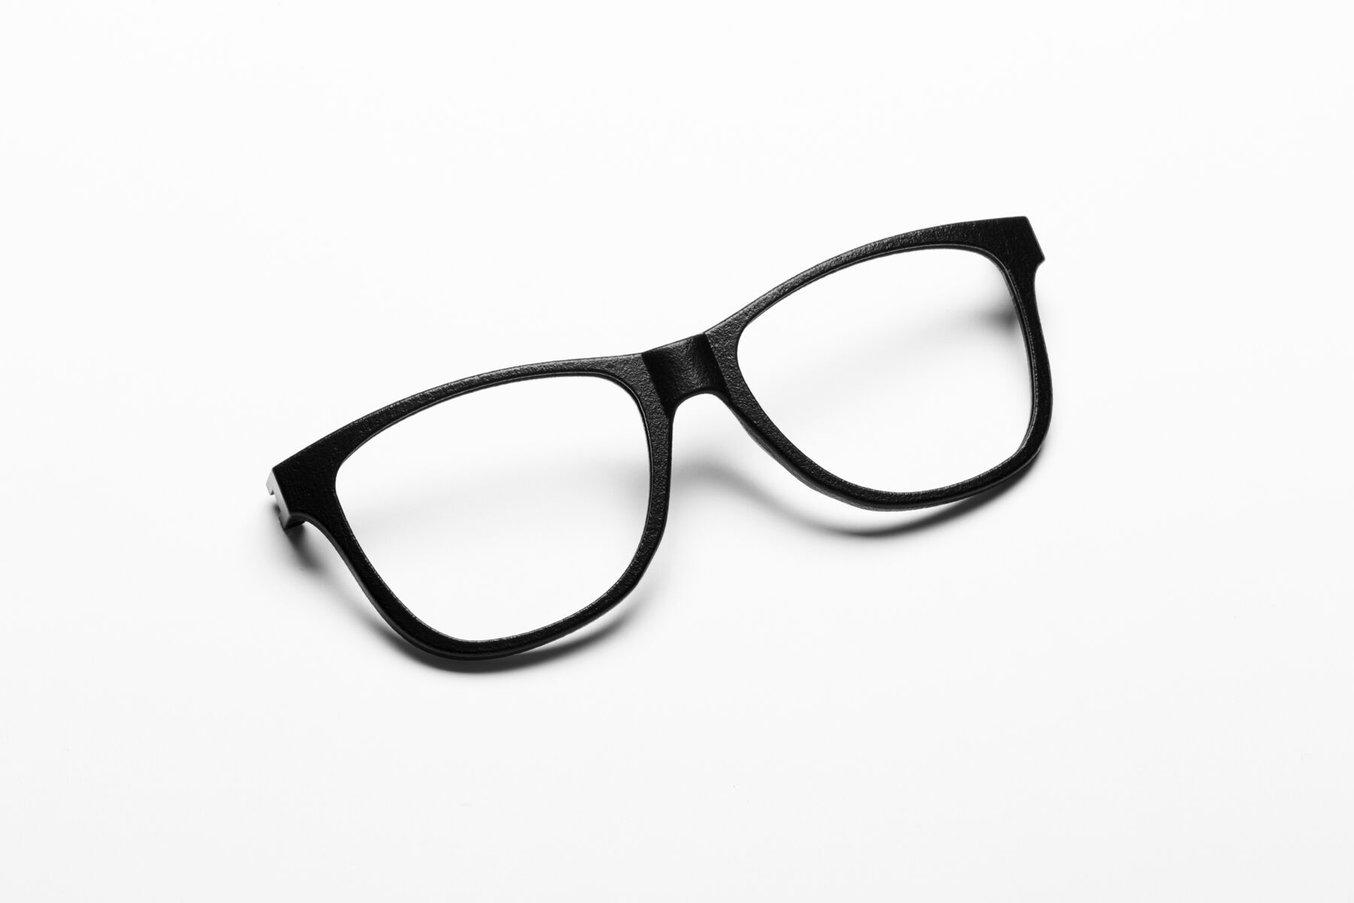 vapor smoothed eyewear frames